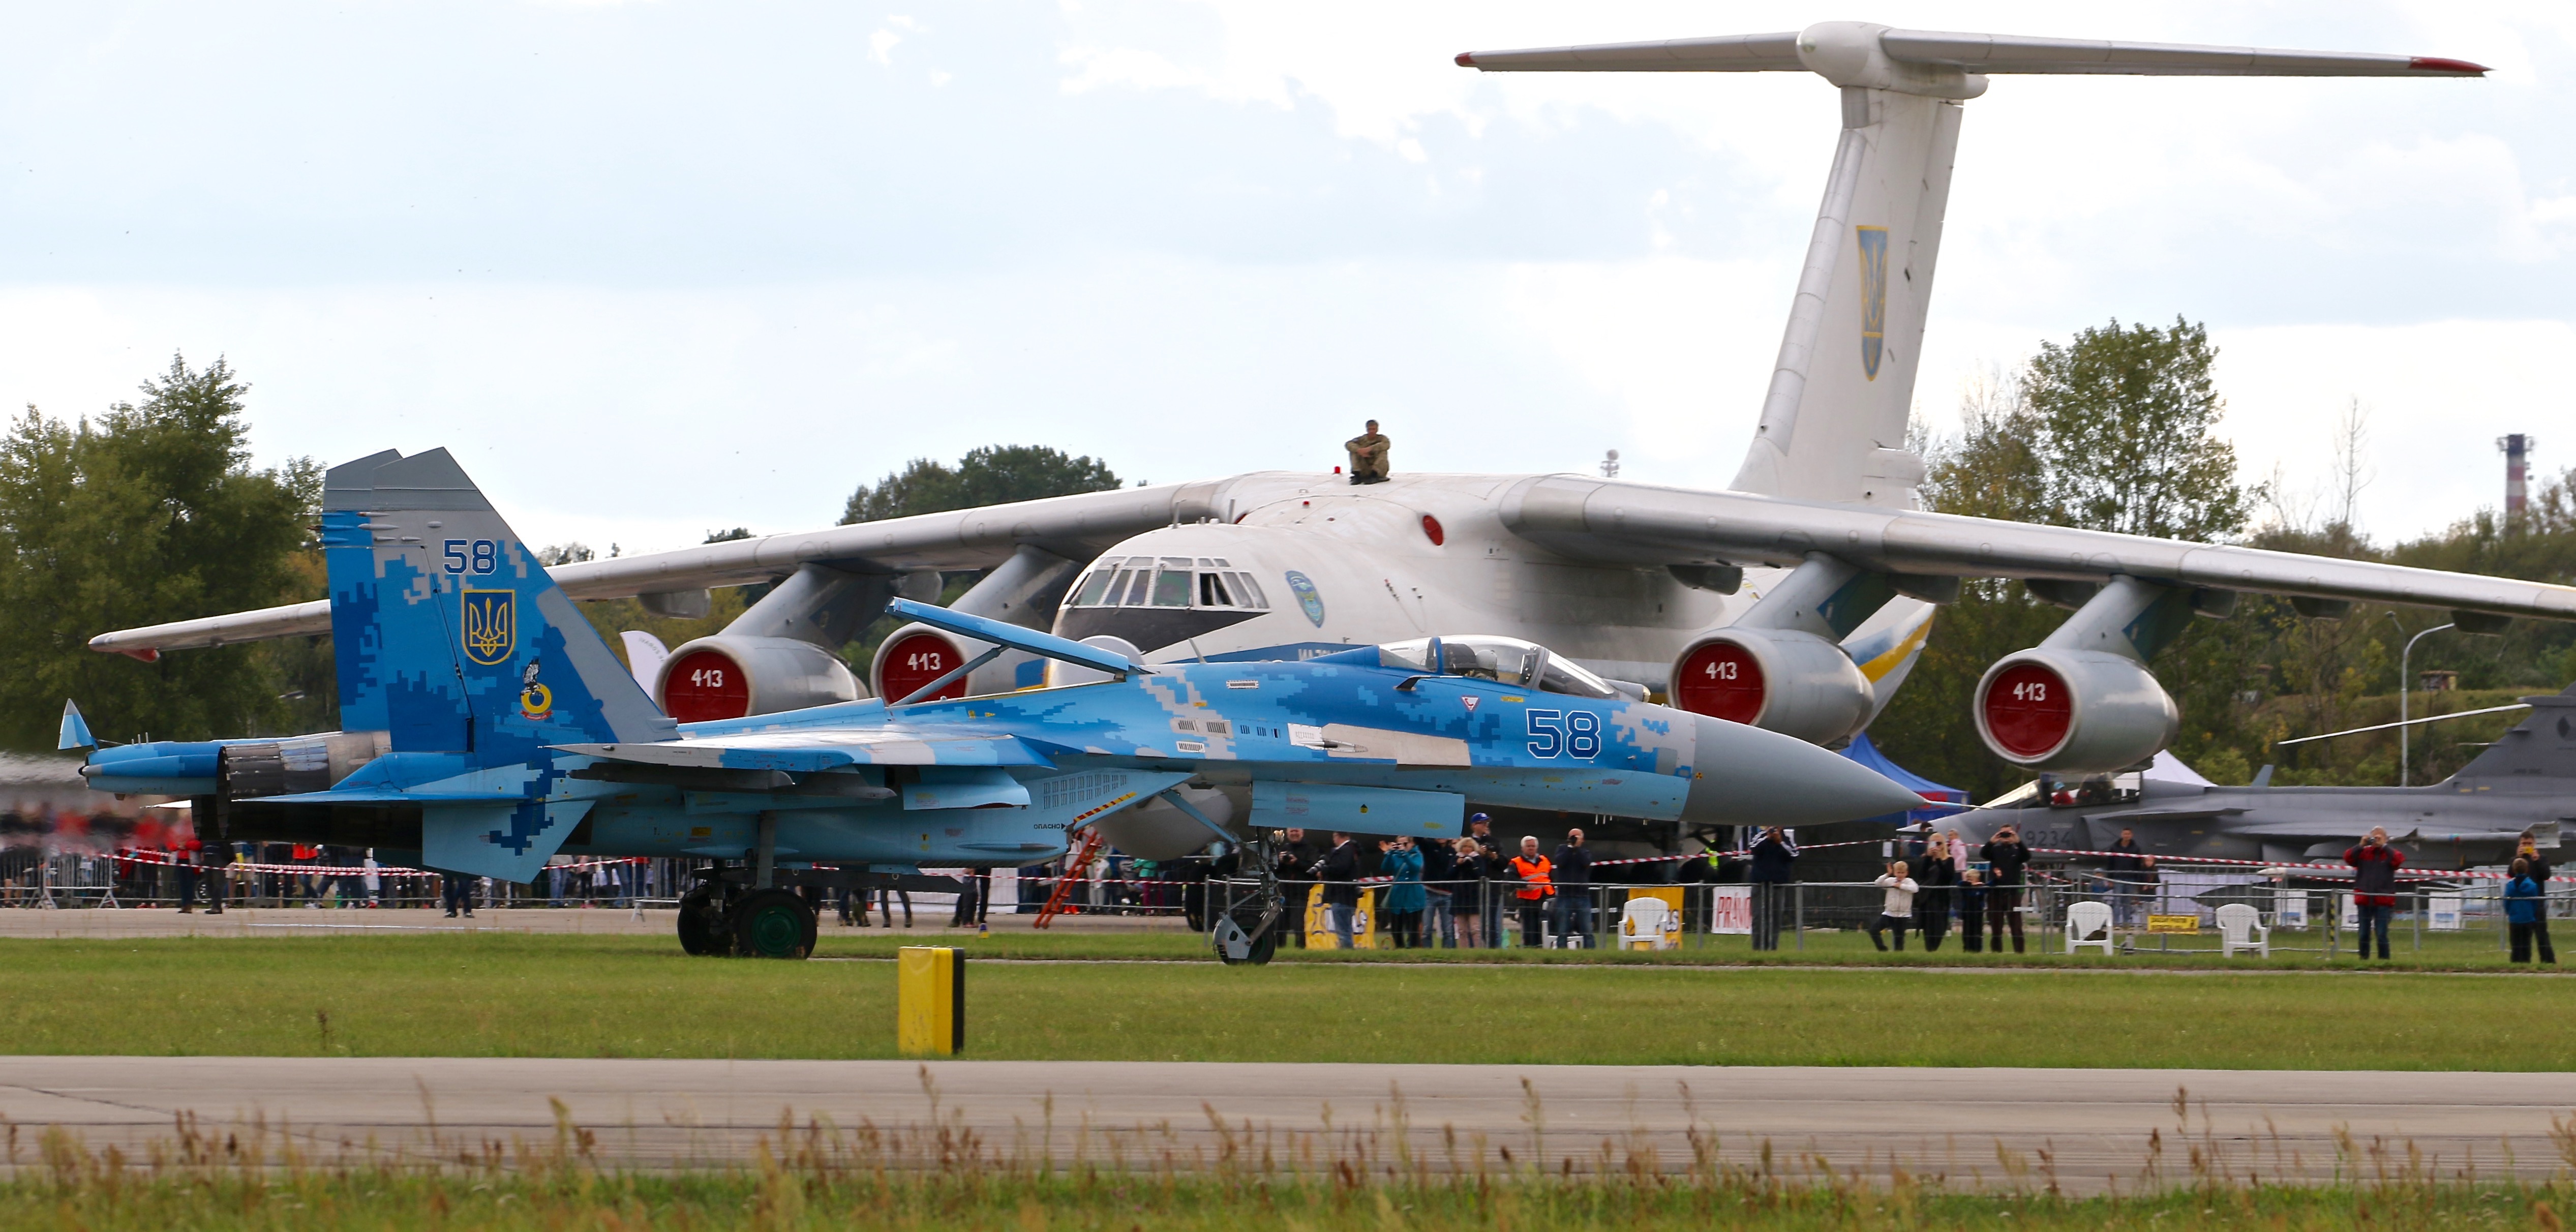 Su-27 and Il-76